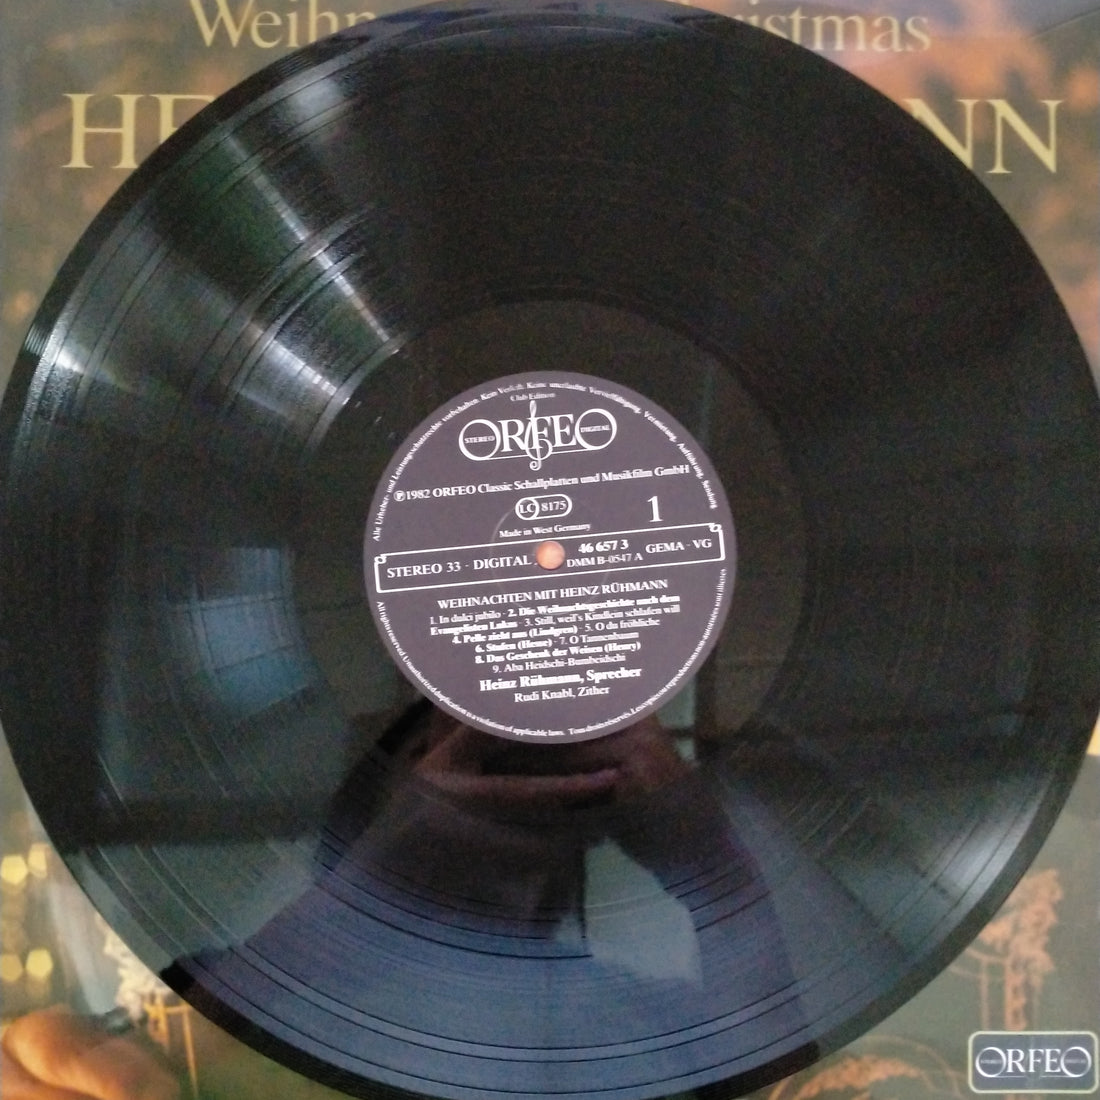 Heinz Rühmann - Weihnachten Mit Heinz Rühmann (Vinyl) (VG+)